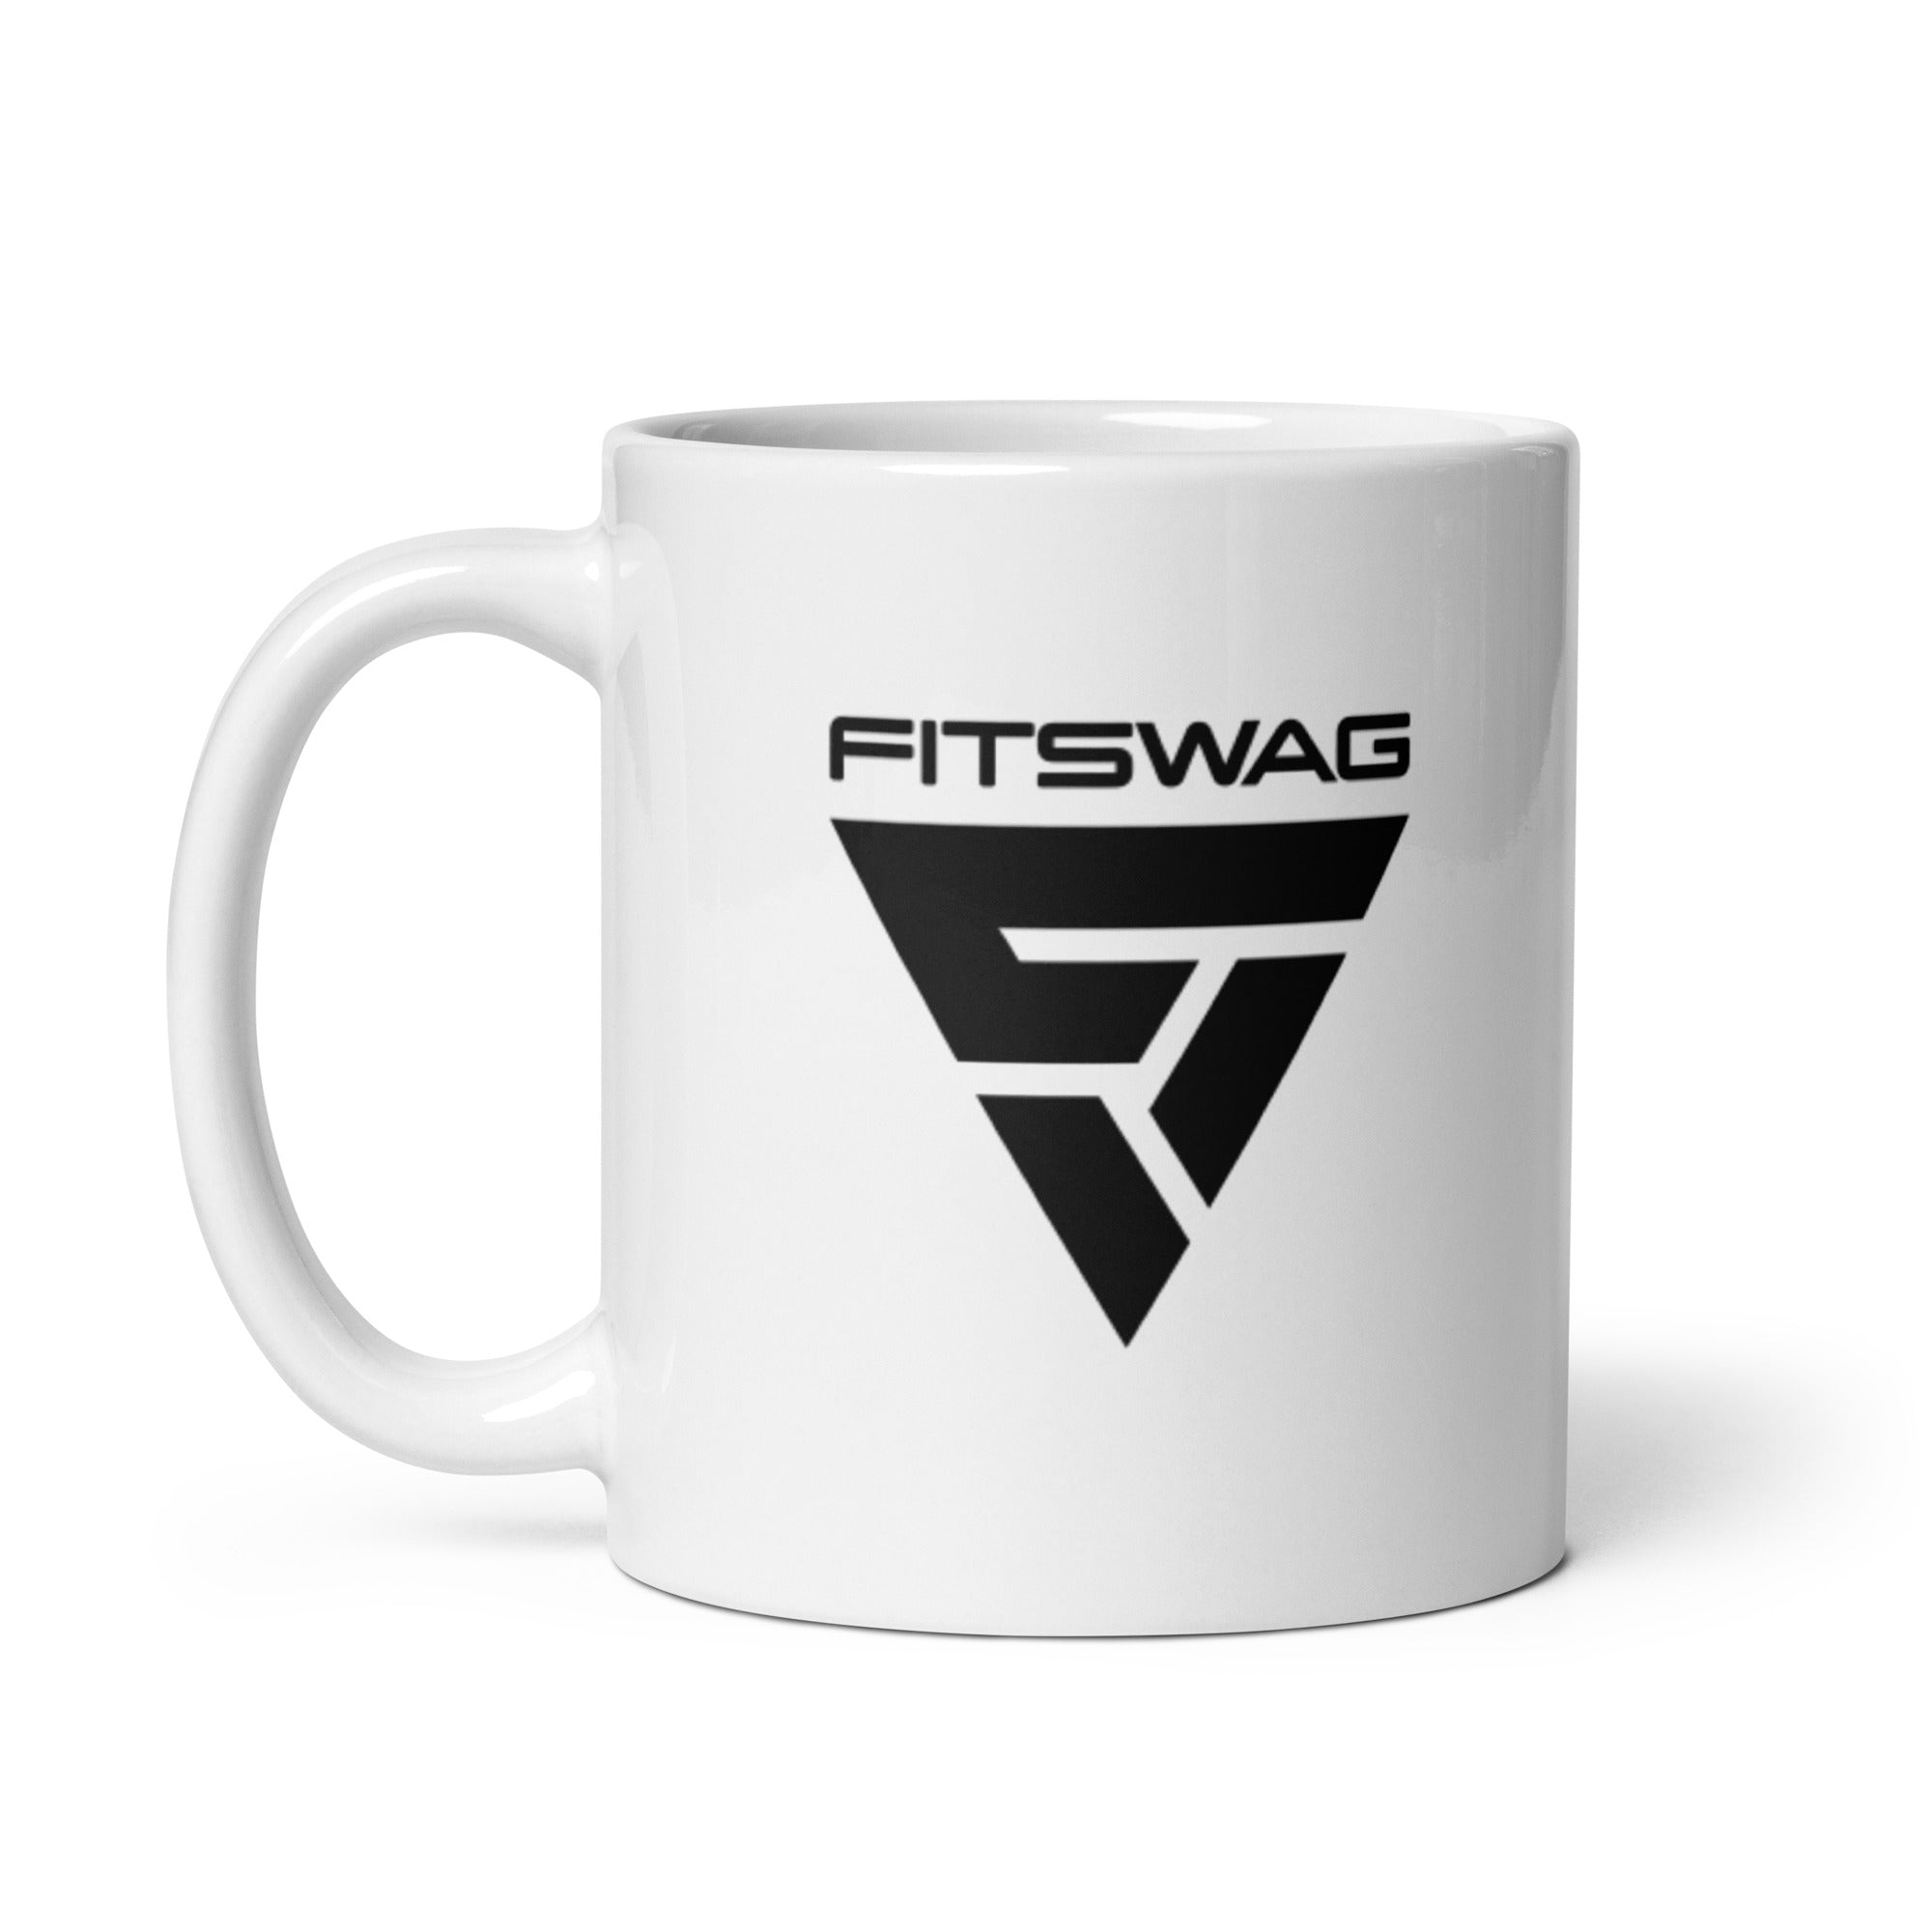 FITSWAG Ceramic Mug